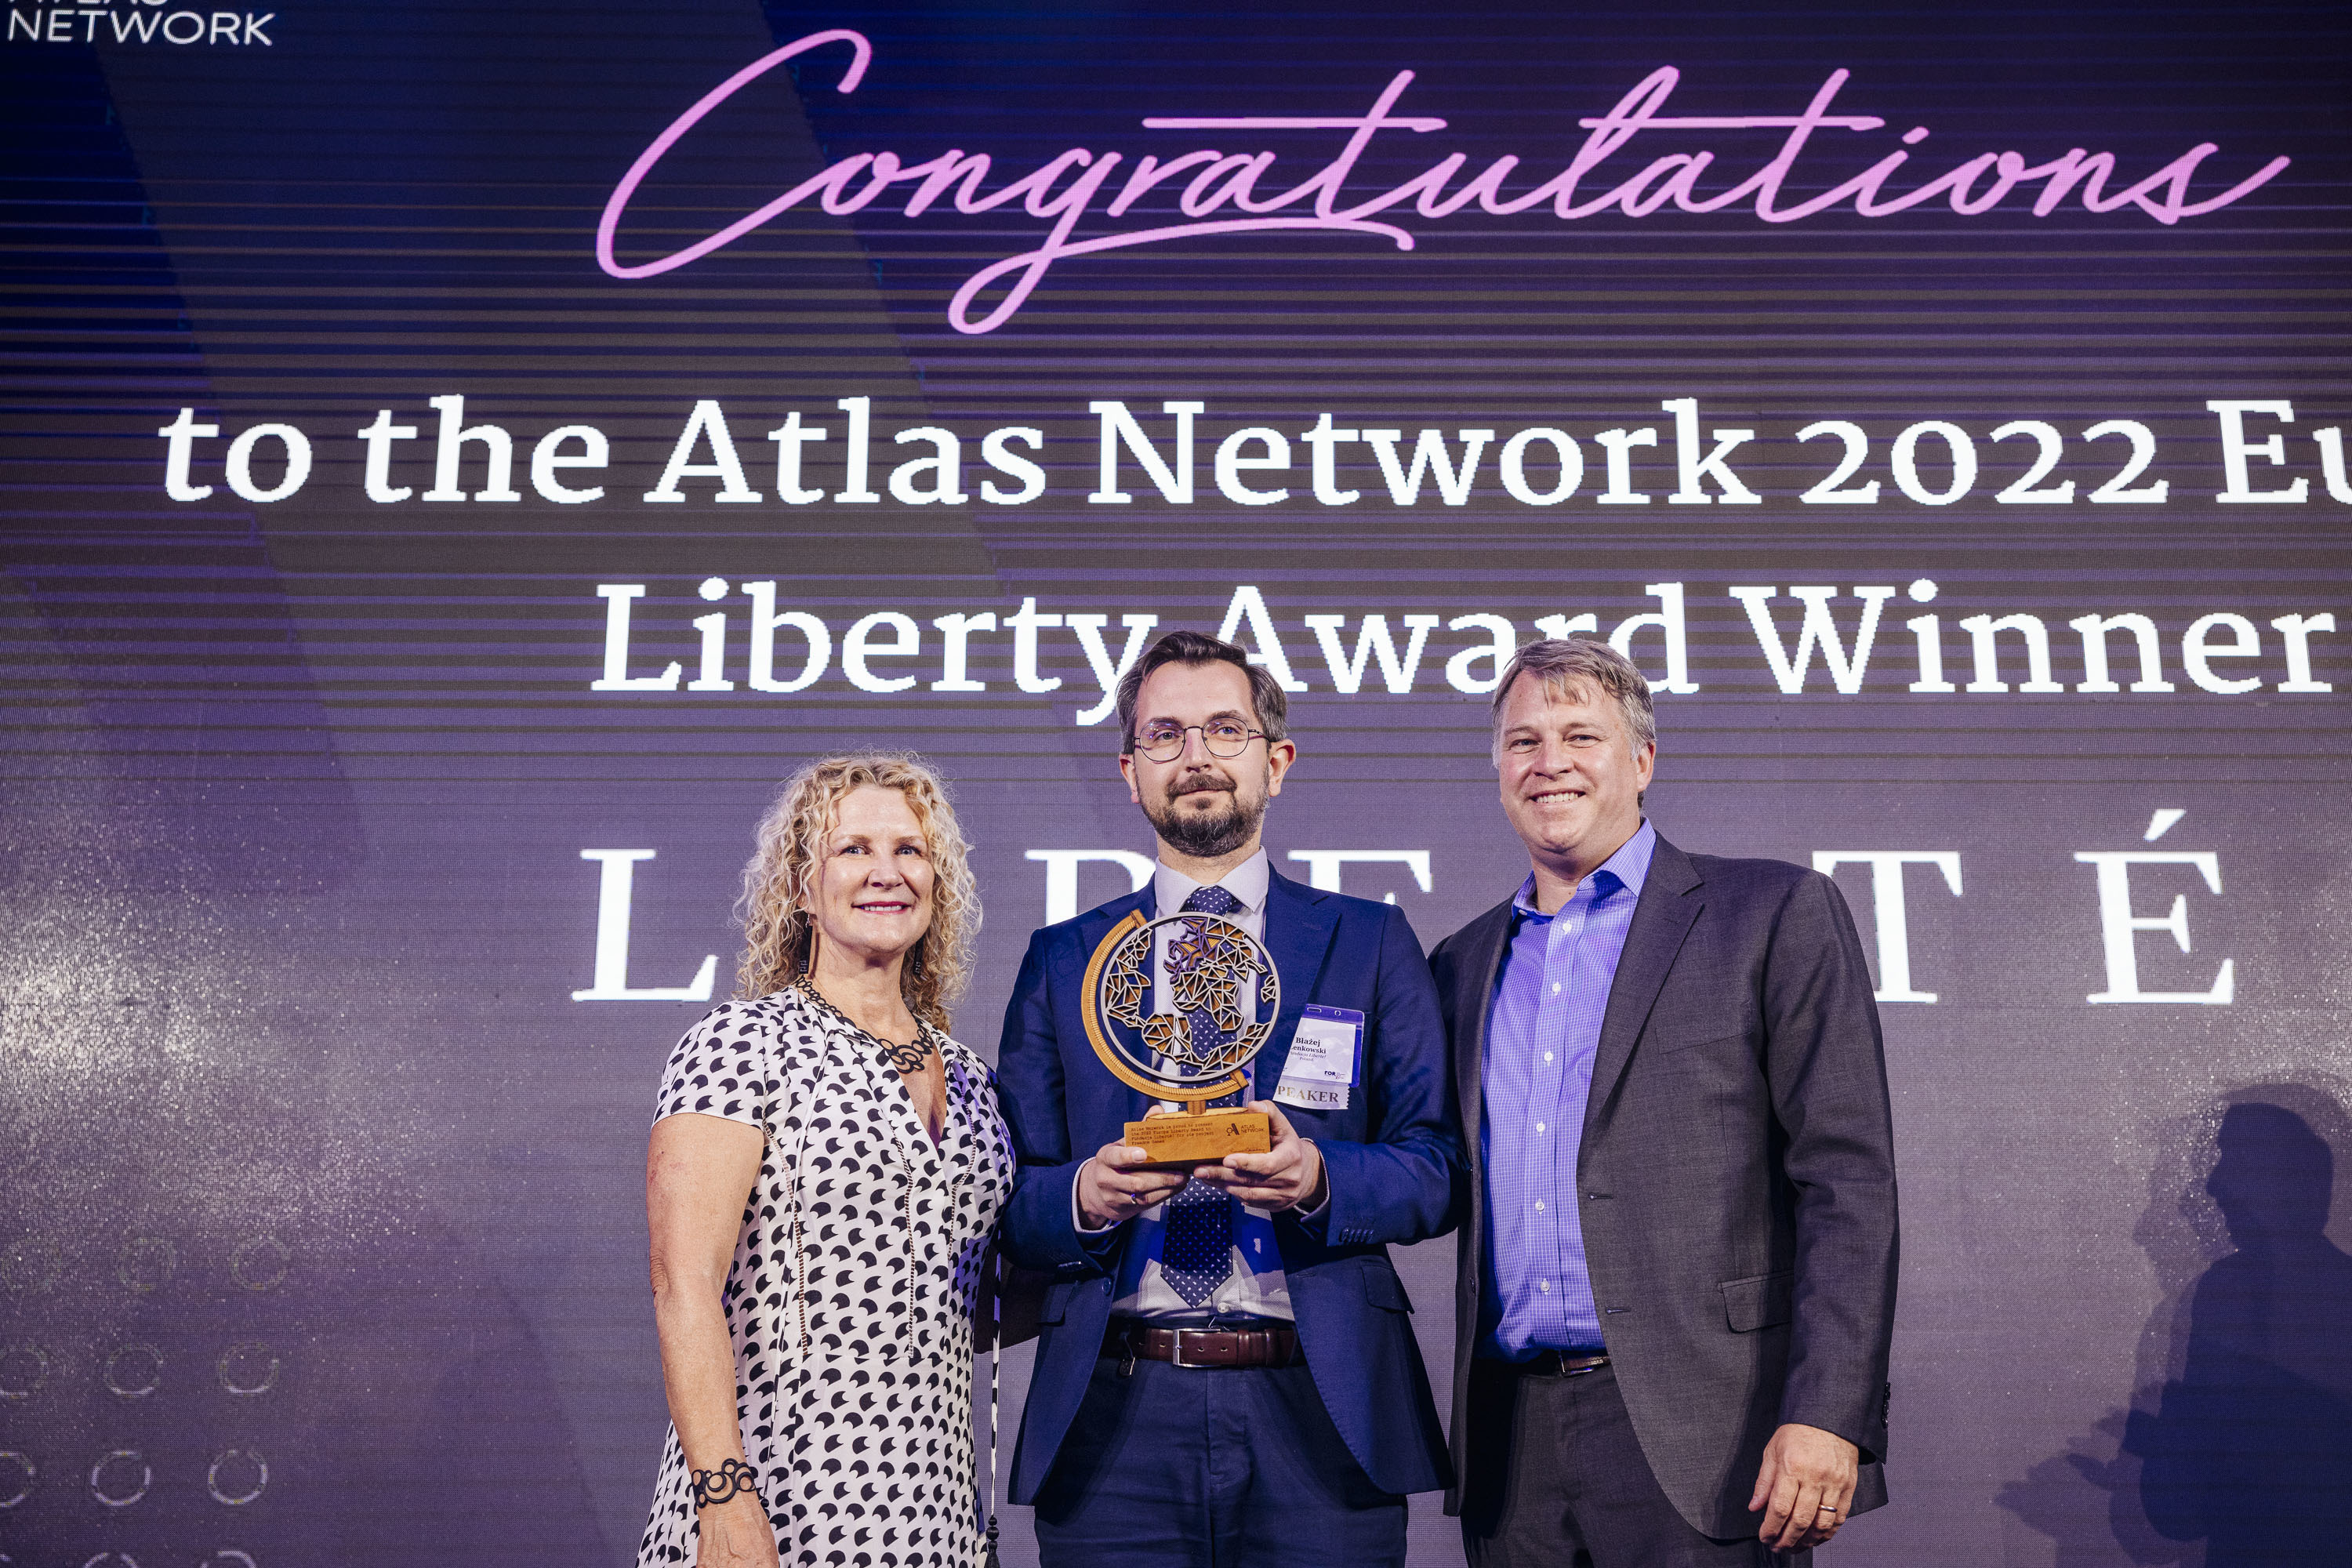 Fundacje Liberte! wins 2022 Europe Liberty Award